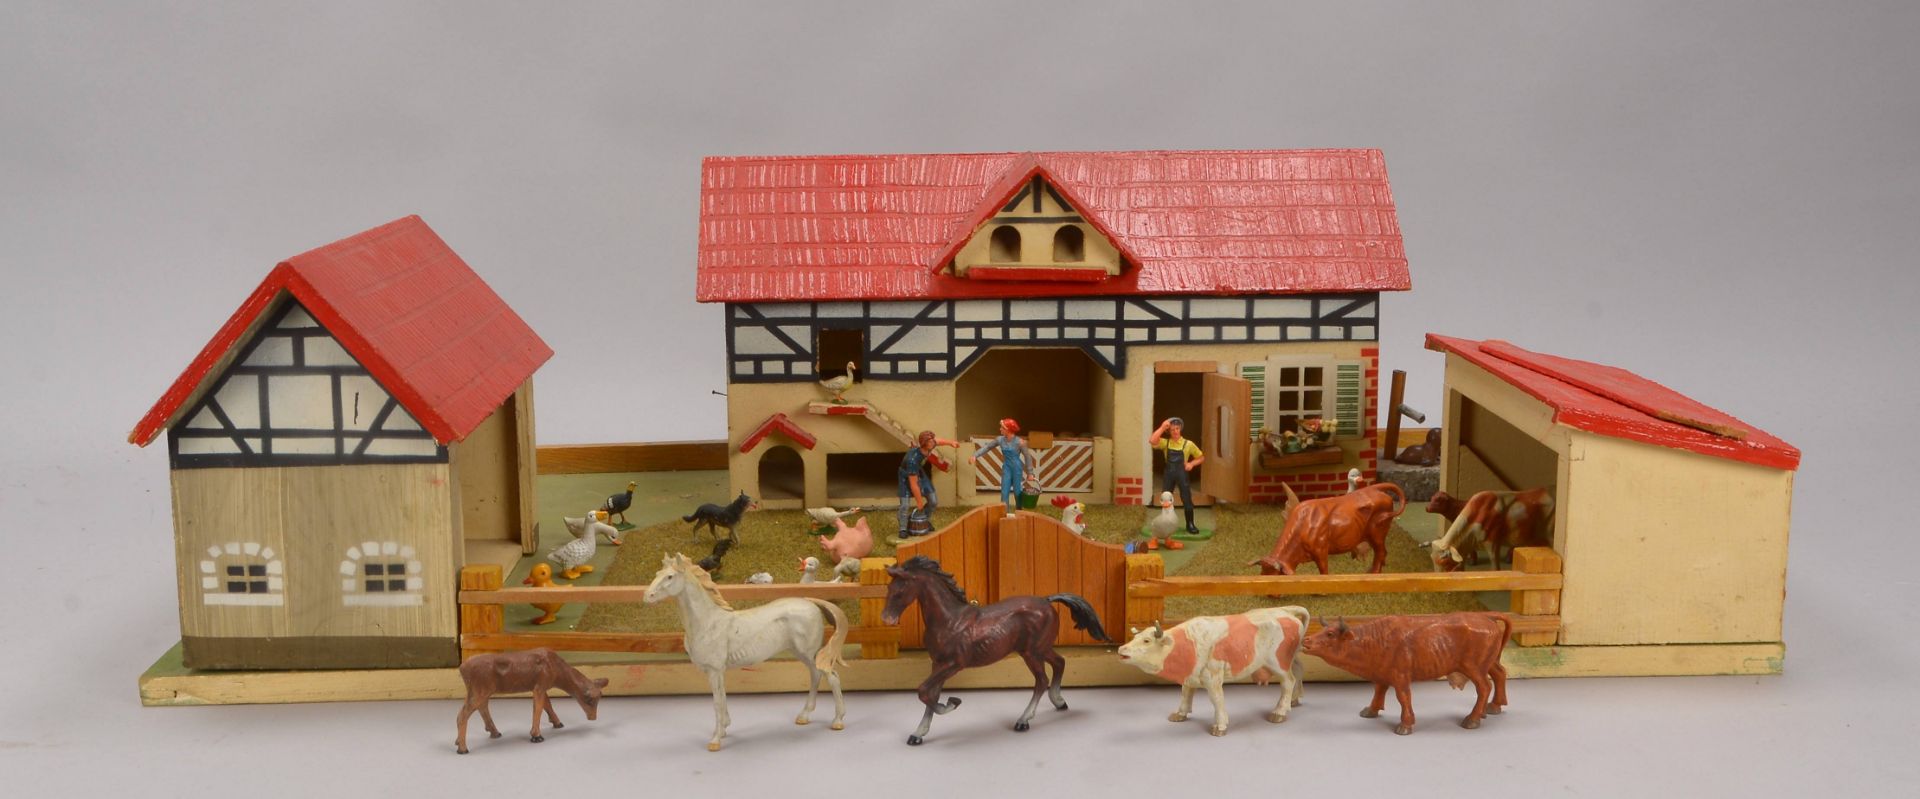 Alter Spielzeug-Bauernhof, 3x Stallgeb&auml;ude, reich best&uuml;ckt mit vielen Tier- und Personenfi - Image 2 of 2